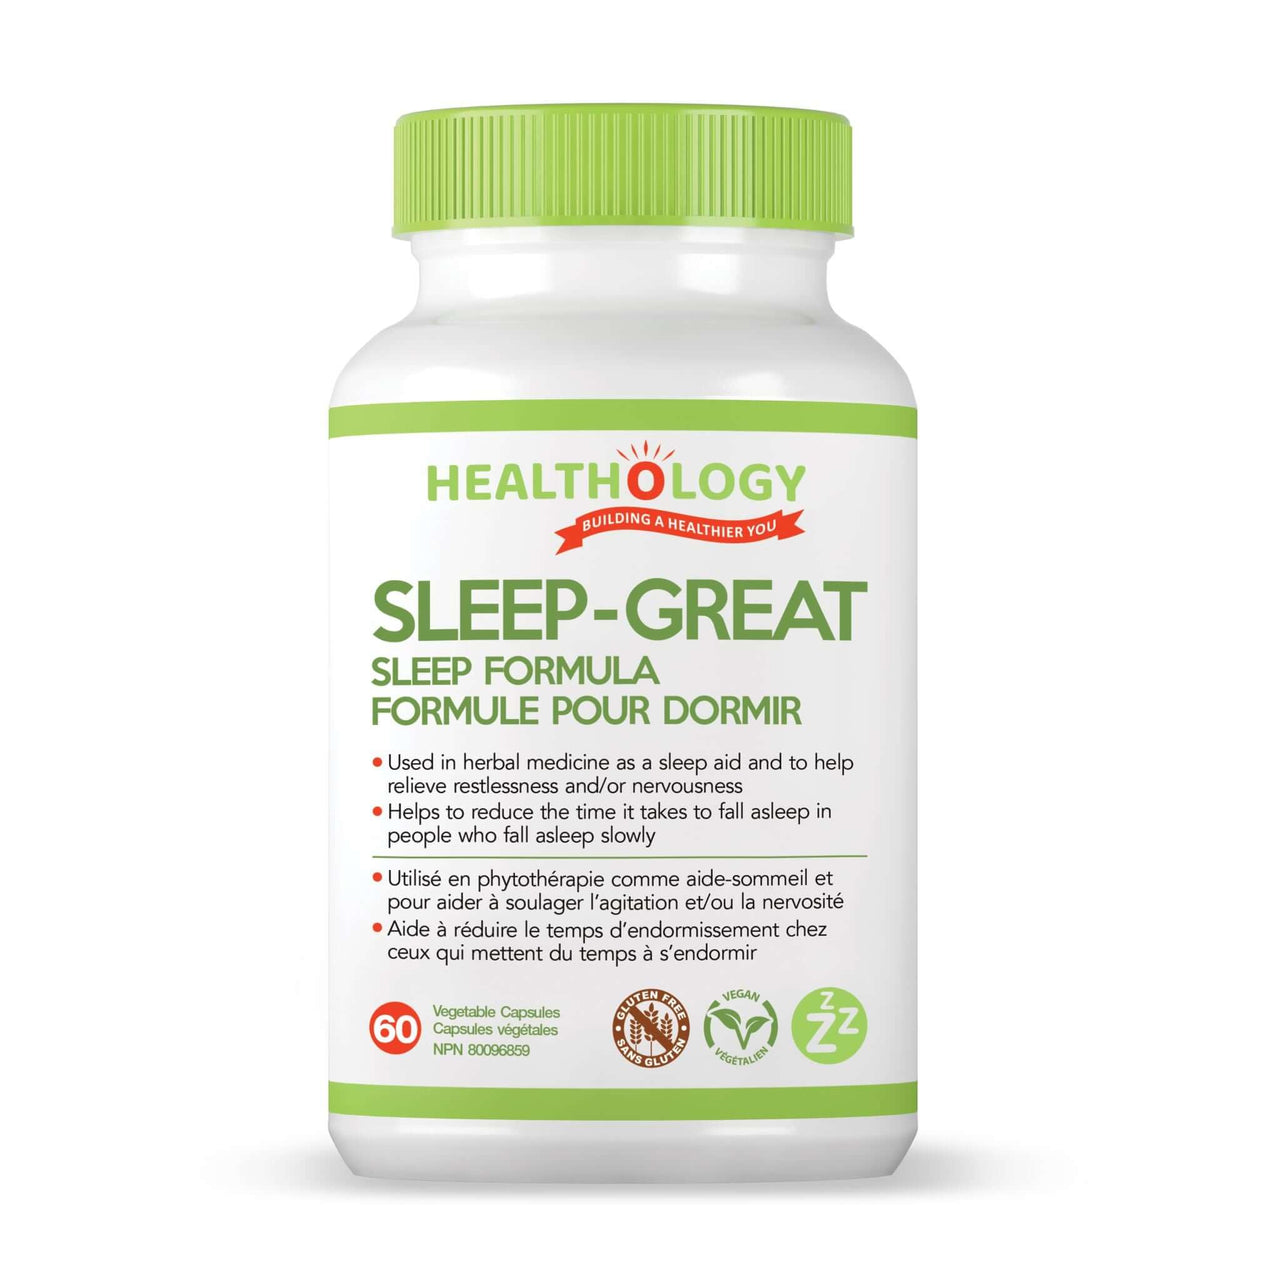 Healthology Sleep-Great Sleep Formula - Nutrition Plus